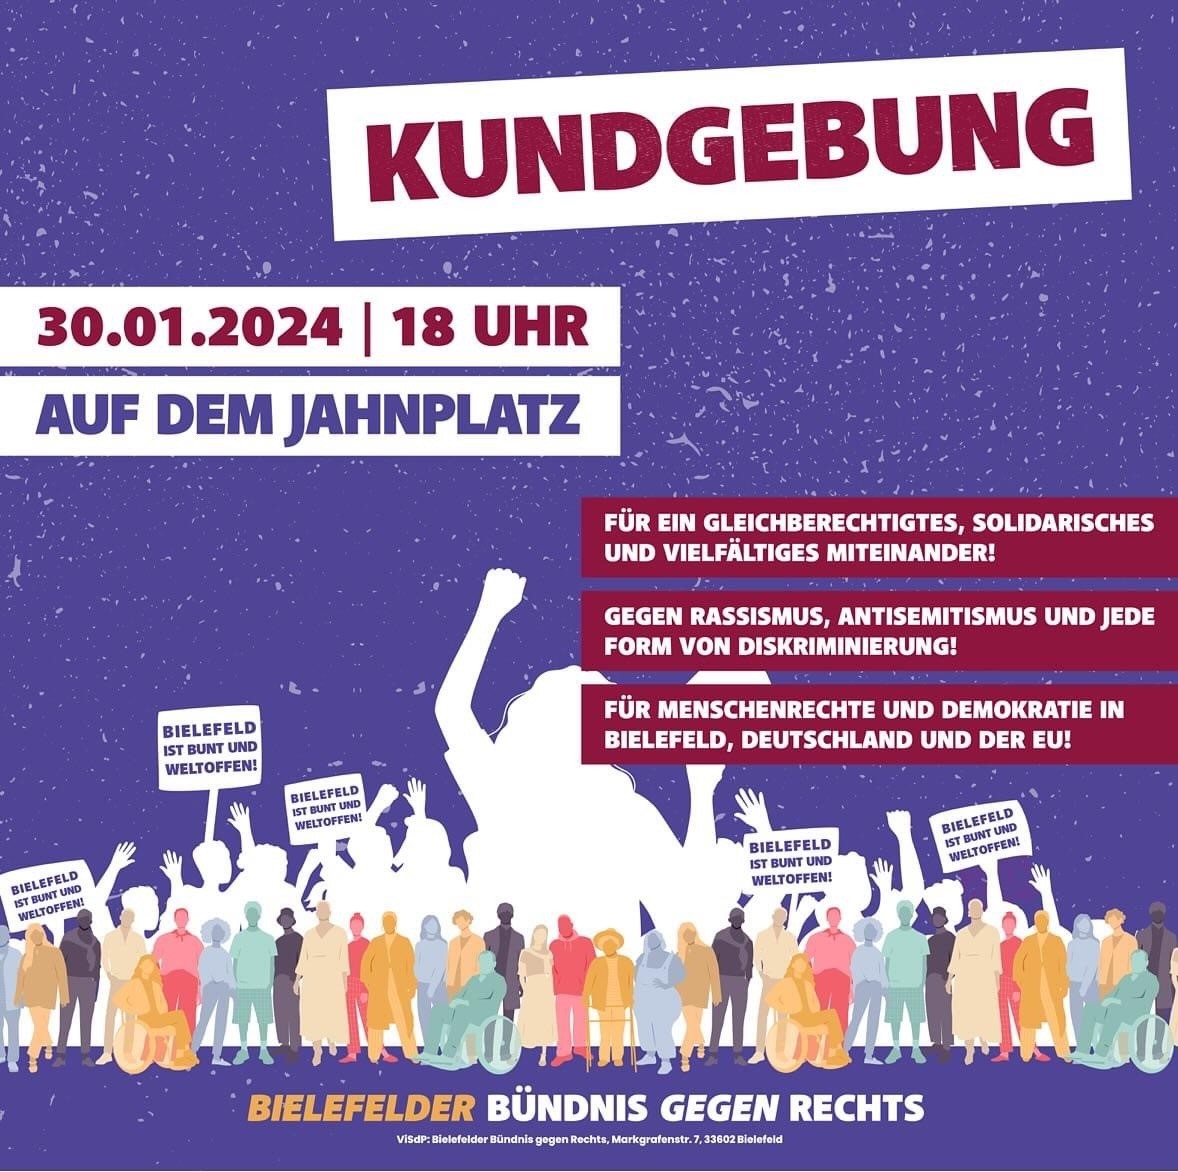 Plakat mit Informationen zu einer Kundgebung gegen Rechts in Bielefeld am 30.01.2024 von Bielefelder Bündnis gegen Rechts